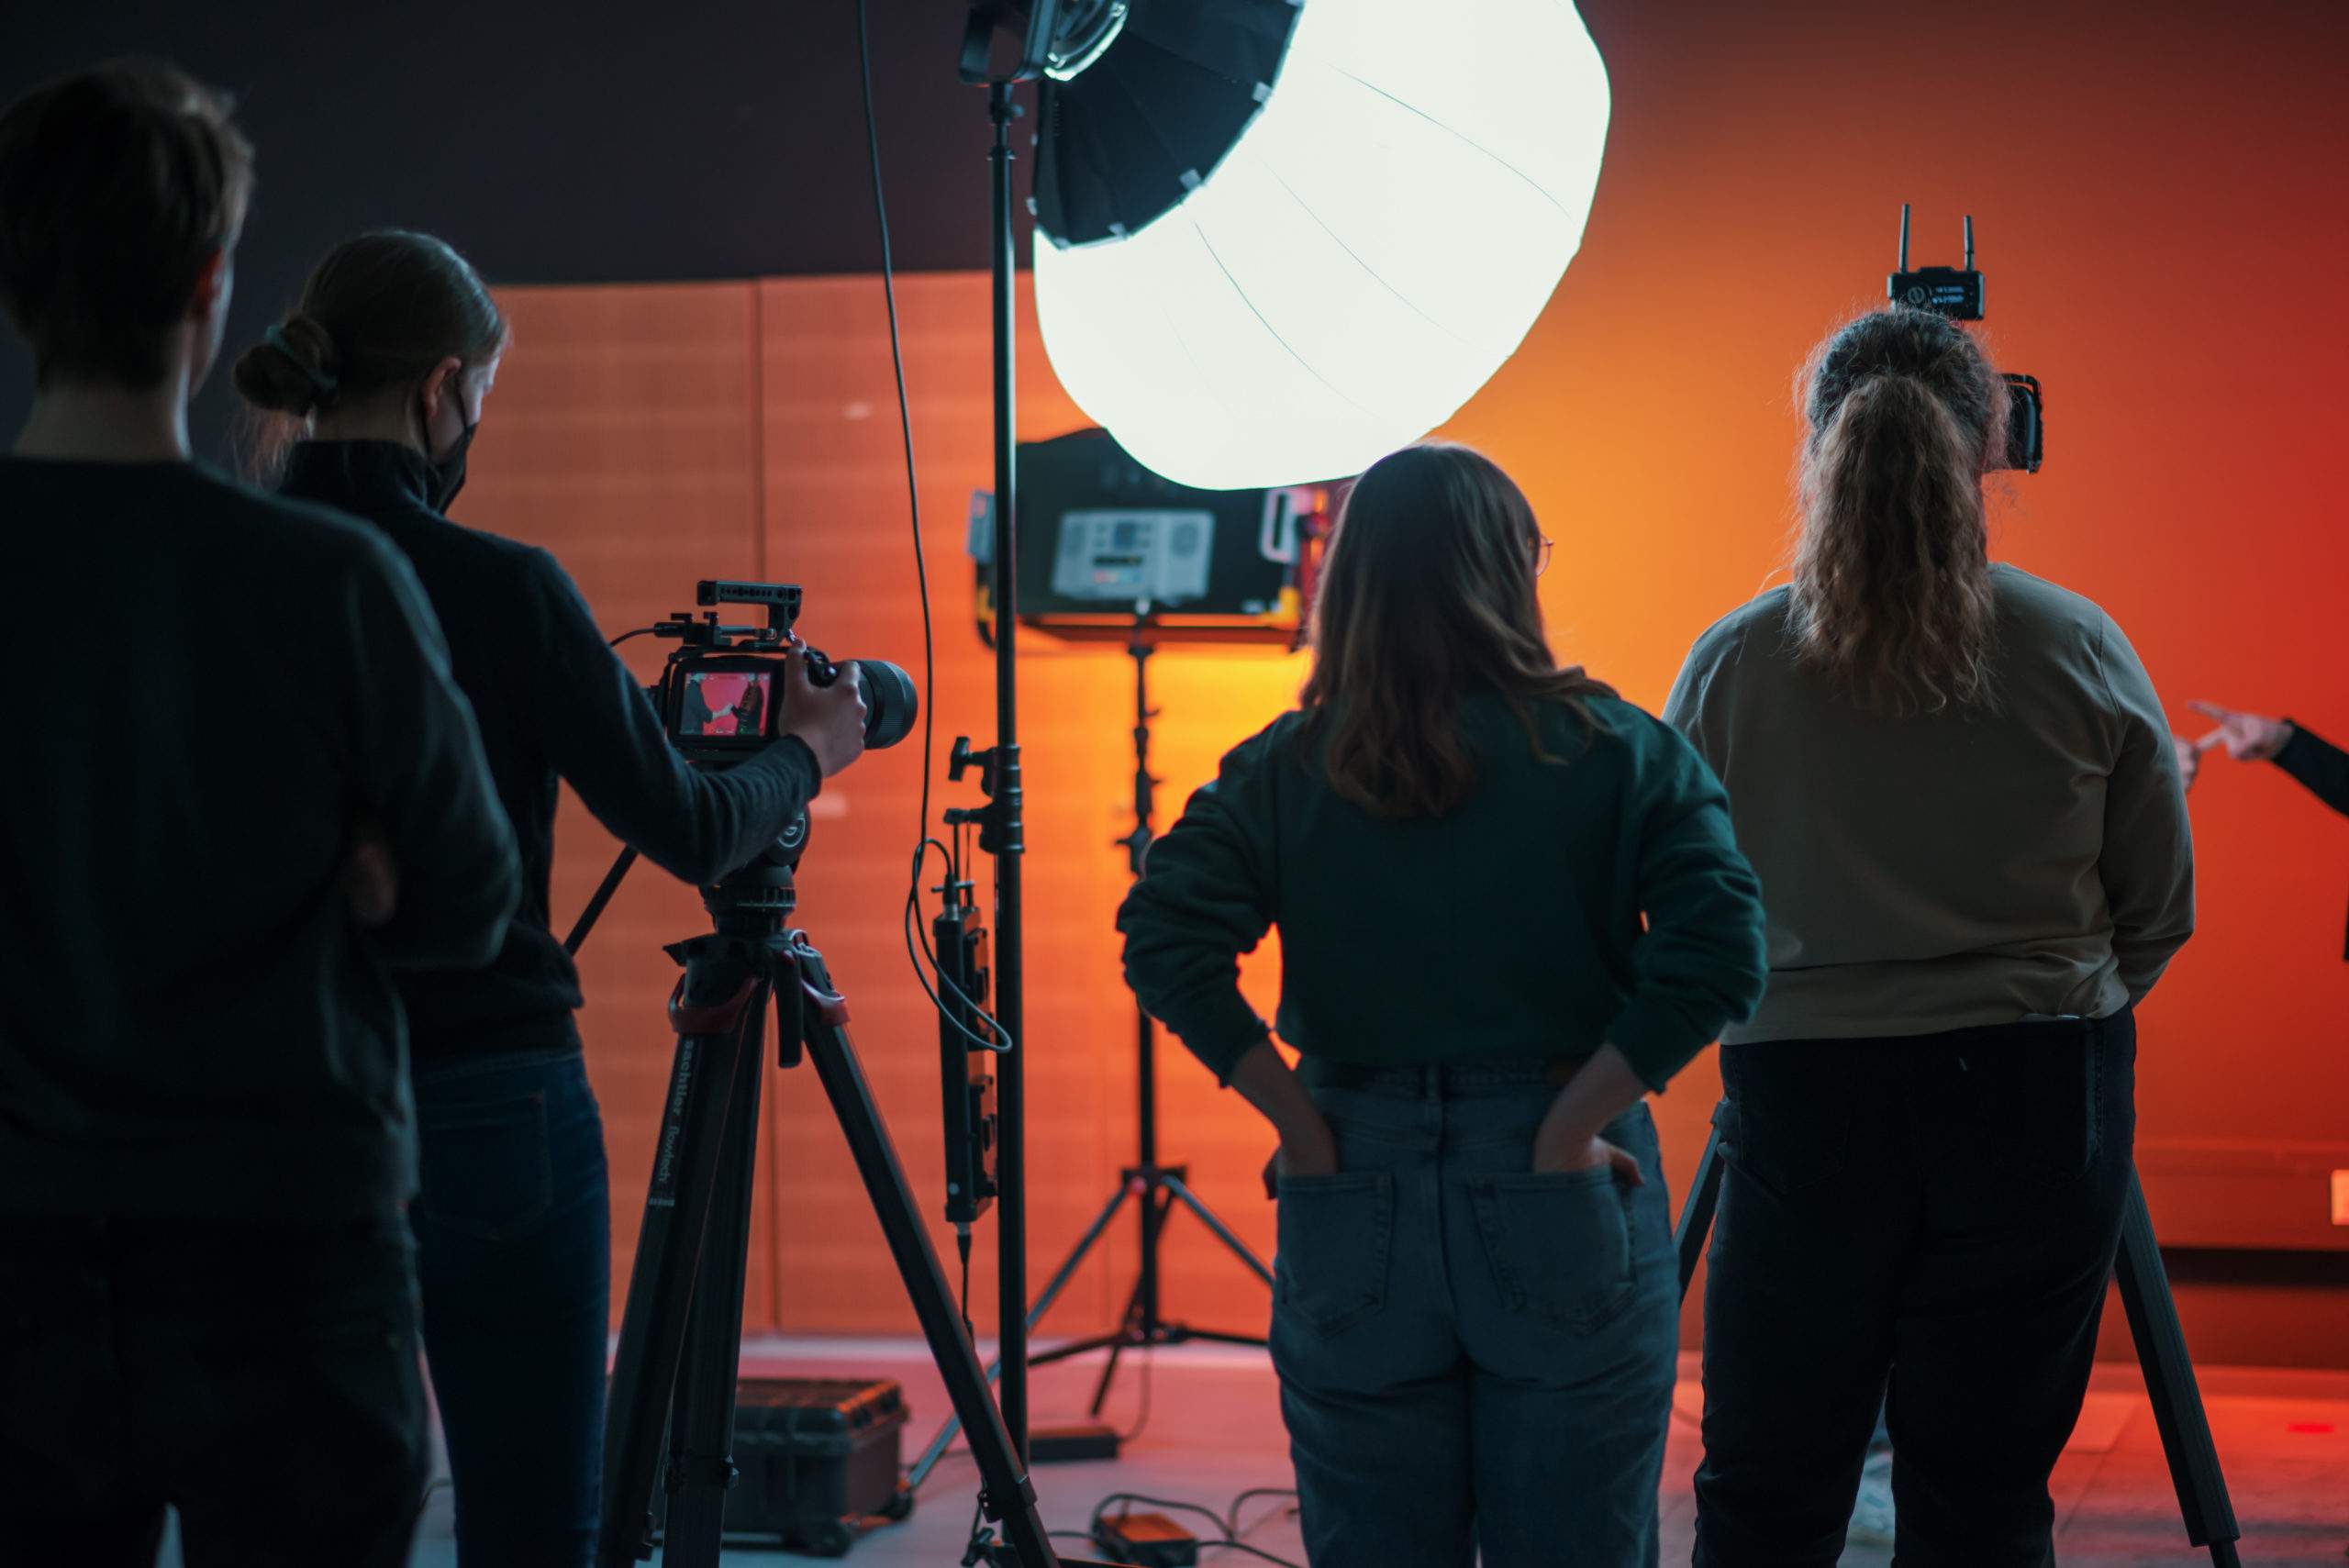 Das Filmteam der OMA unterstützt Studierende beim Erstellen von OER, vier Personen mit dem Rücken zum Betrachter, mit Kamera- und Beleuchtungsausrüstung